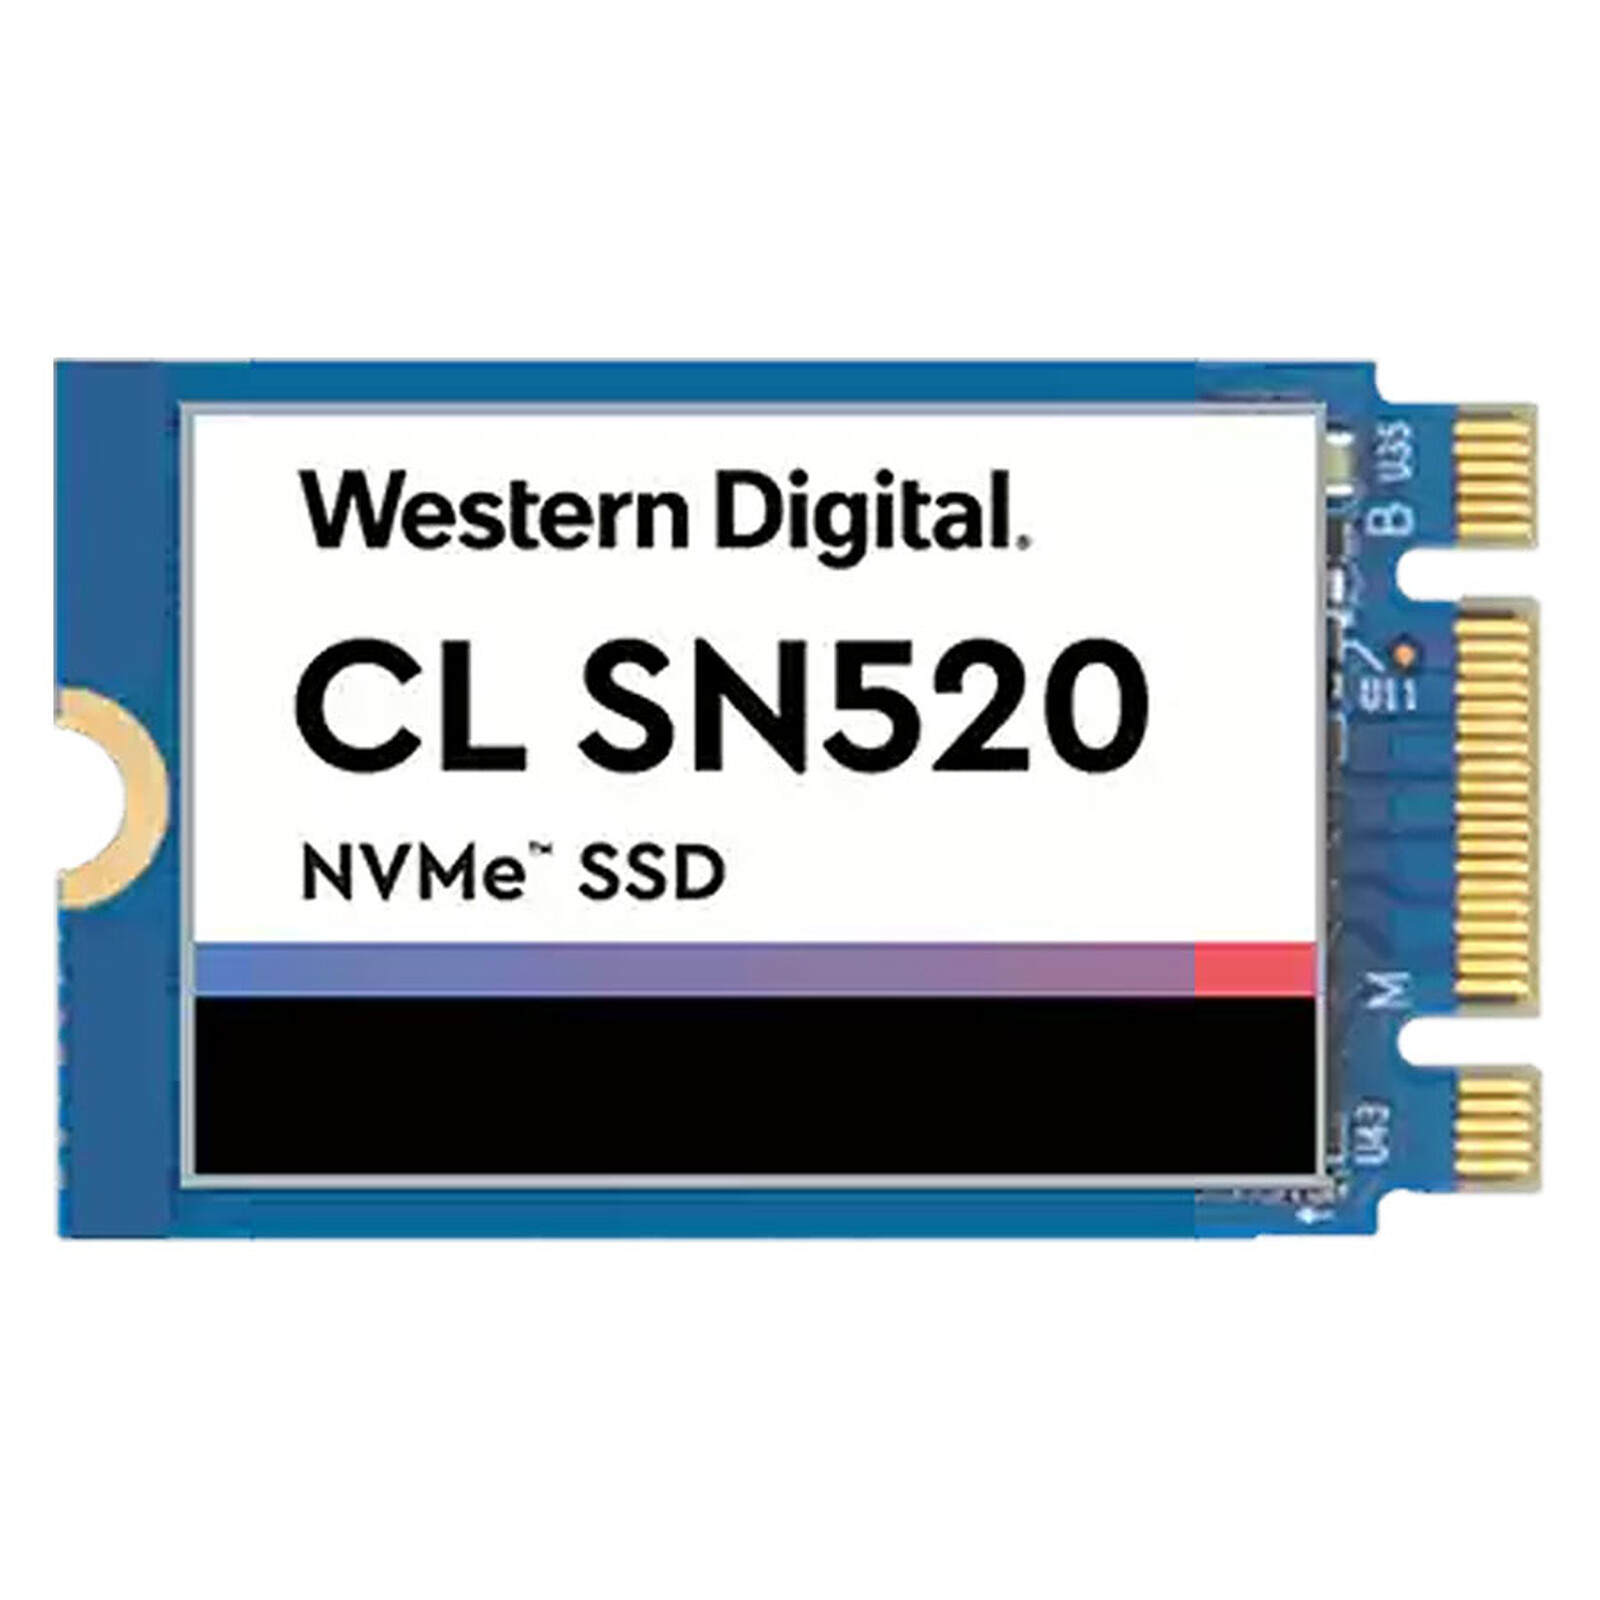 Samsung SSD 990 PRO M.2 PCIe NVMe 4 To avec dissipateur - Disque SSD - LDLC